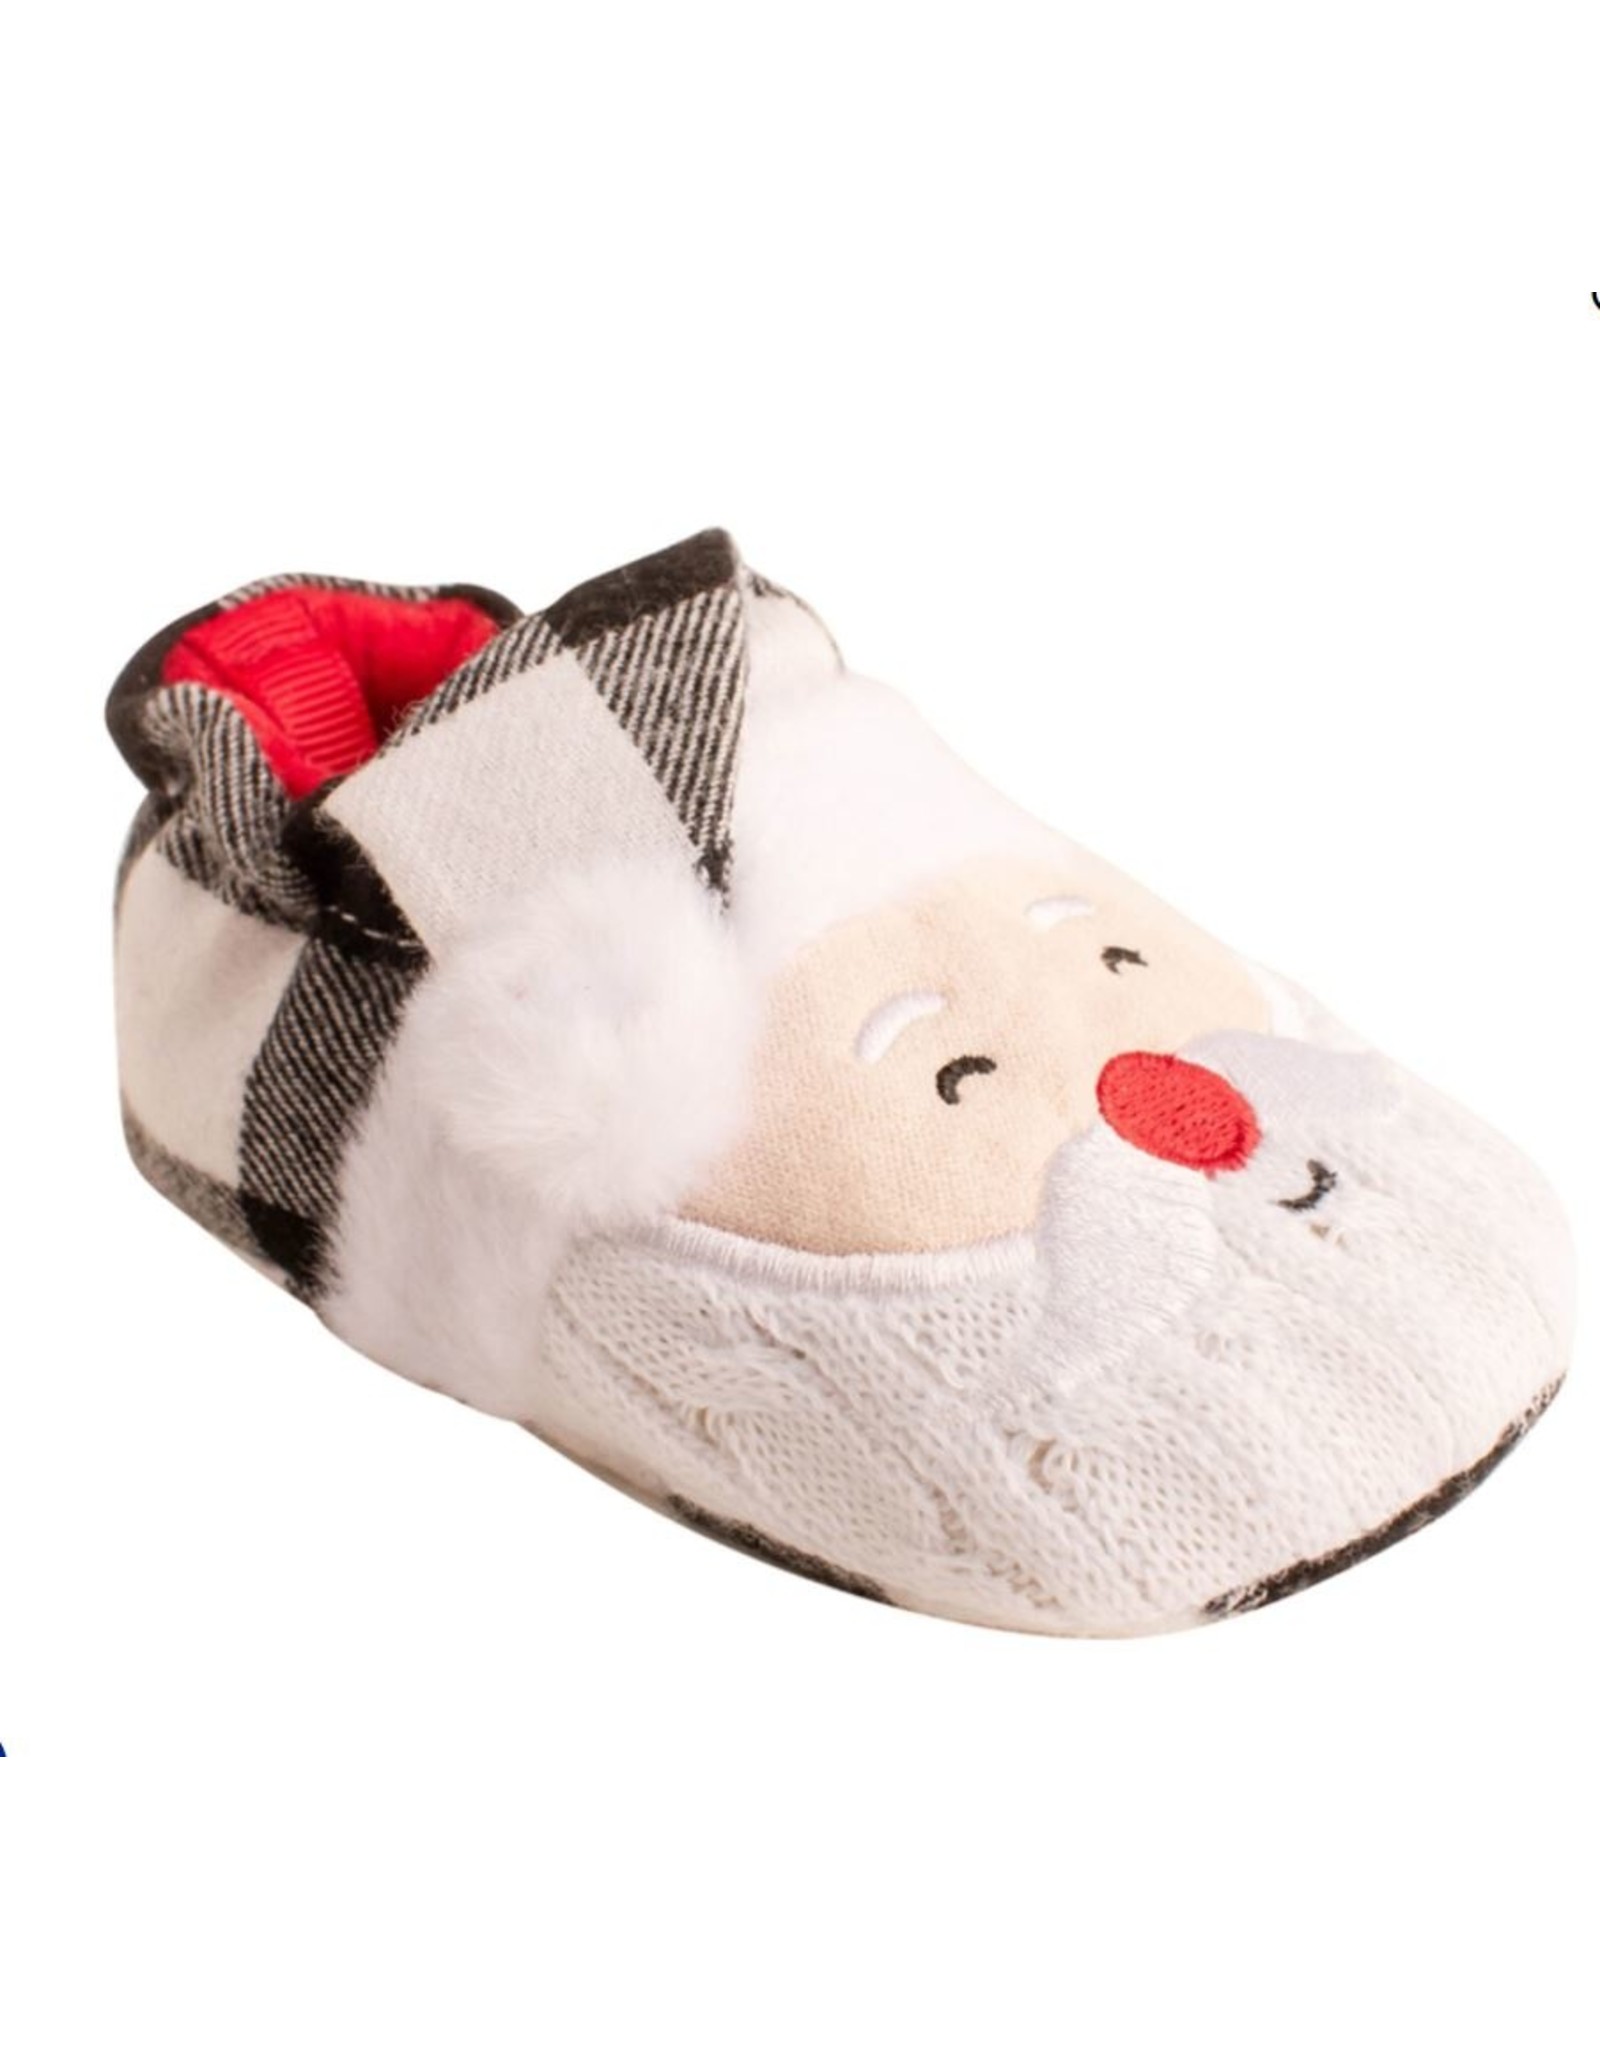 Baby Deer Santa Face Slippers